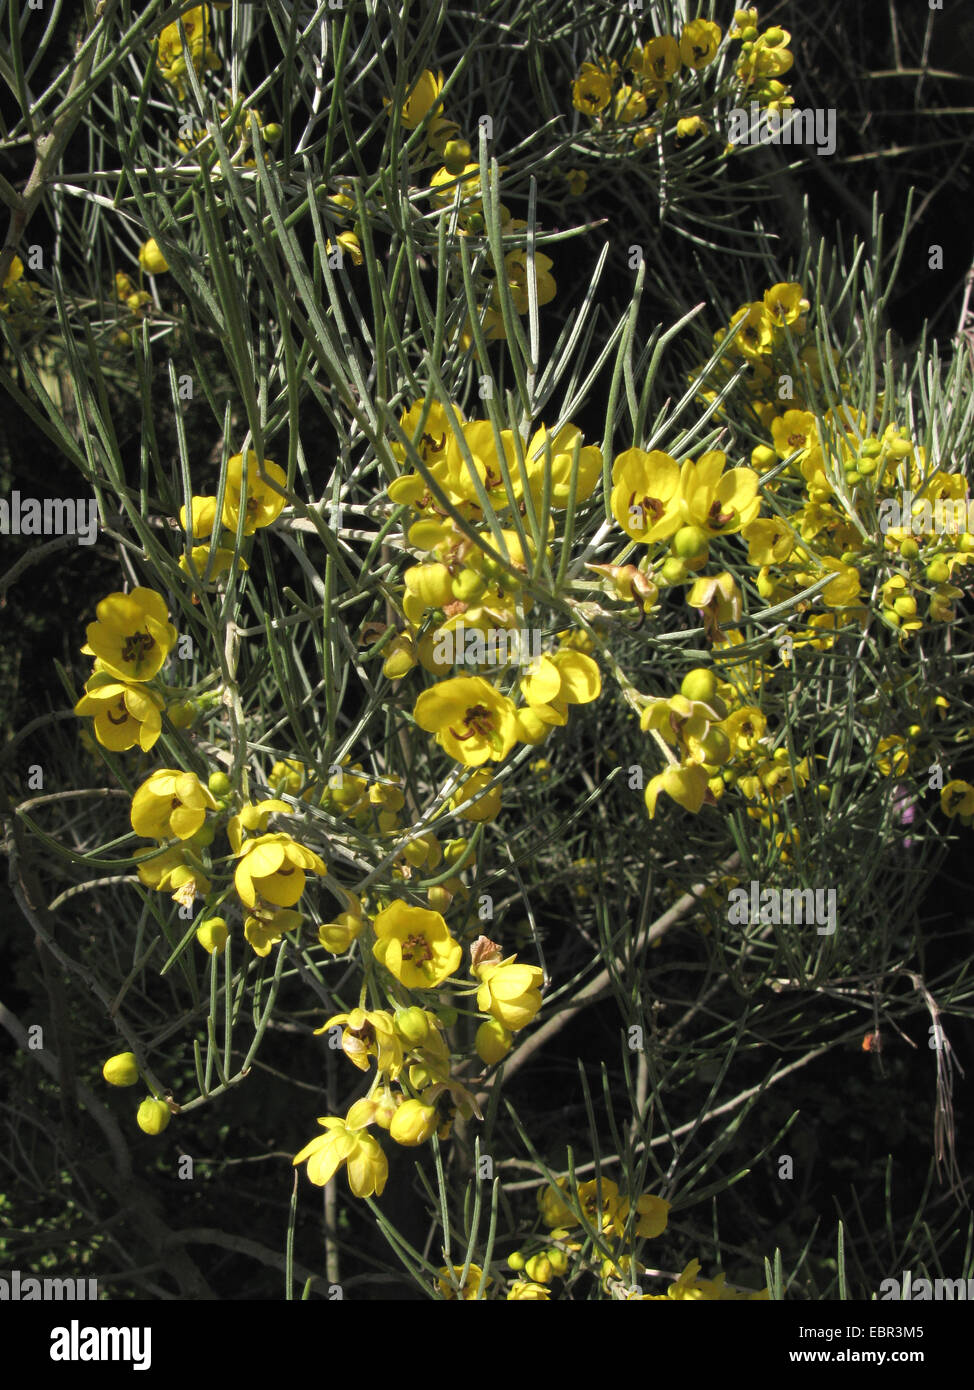 Silver Cassia, Feathery Cassia, Silver Senna (Senna artemisioides, Cassia artemisioides), blooming branch Stock Photo